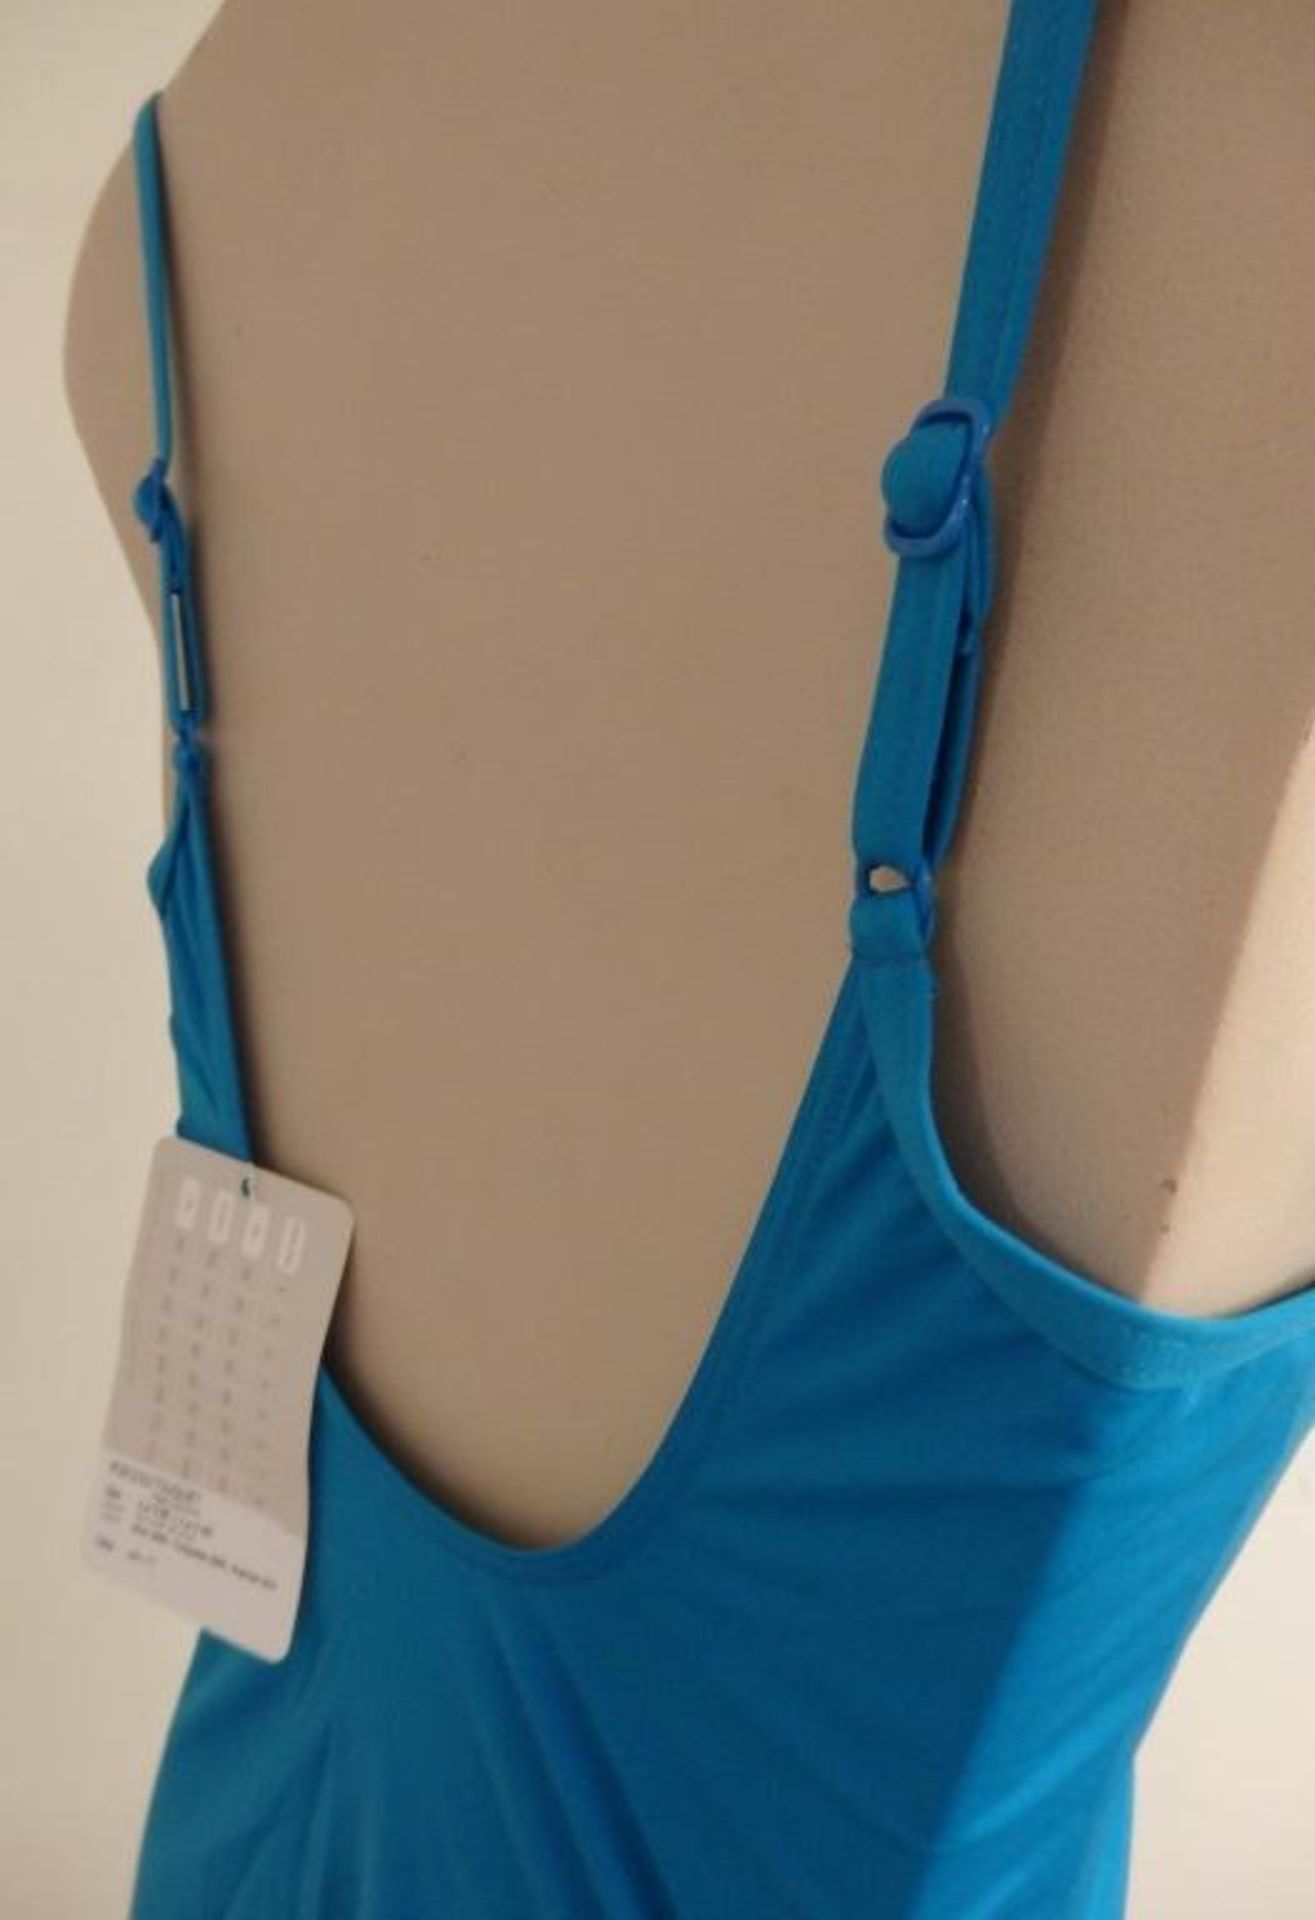 1 x Rasurel - Turquoise -Touquet balconnet Swimsuit - R20232 - Size 2C - UK 32 - Fr 85 - EU/Int 70 - Image 8 of 9